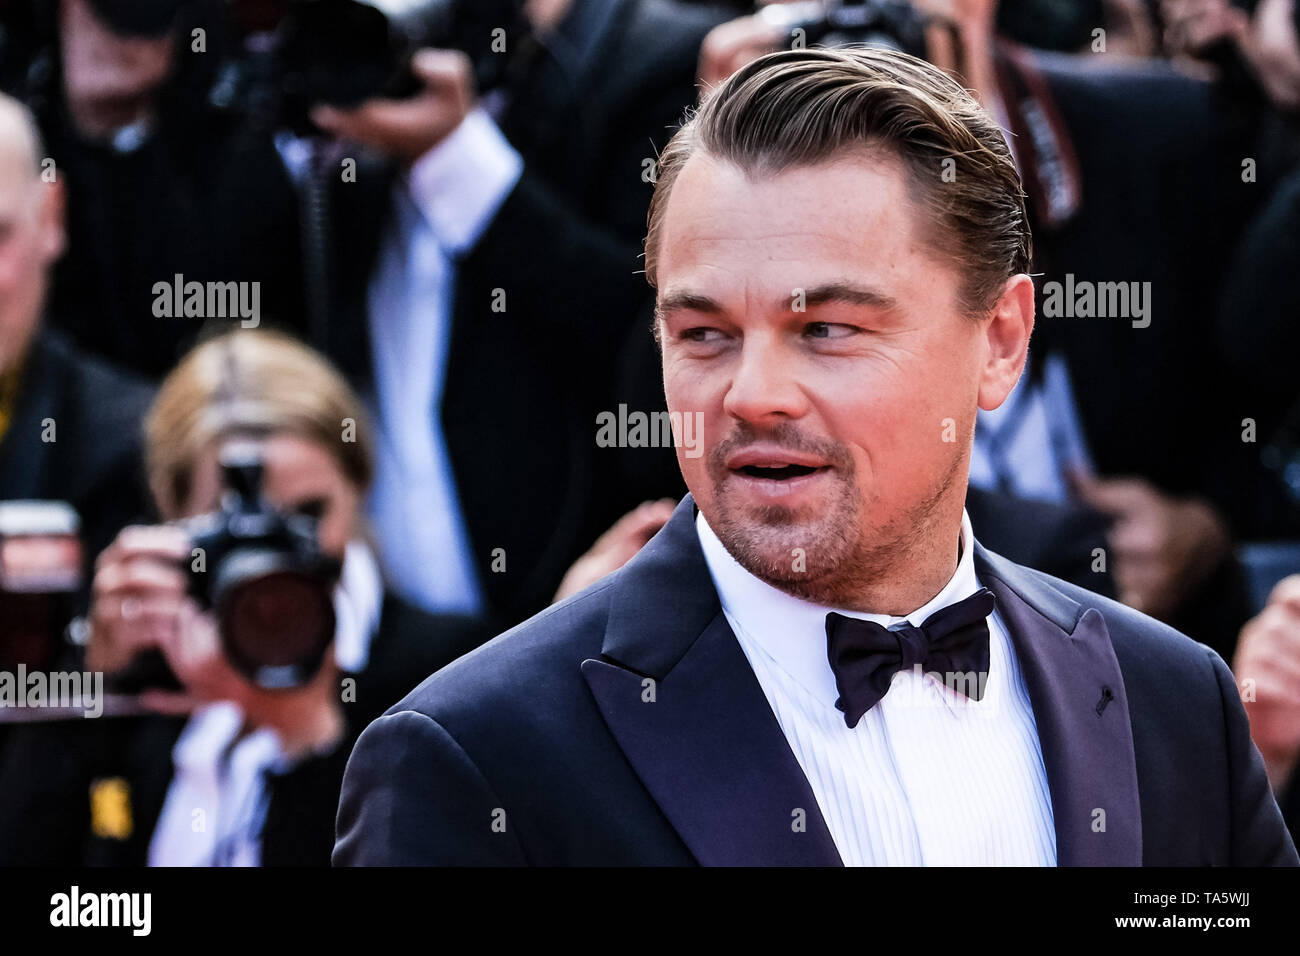 Leonardo DiCaprio pone sul tappeto rosso per una volta in ... Hollywood Premiere martedì 21 maggio 2019 presso la 72a edizione del Festival de Cannes, Palais des Festivals Cannes. Nella foto: Leonardo DiCaprio. Foto di Julie Edwards. Foto Stock